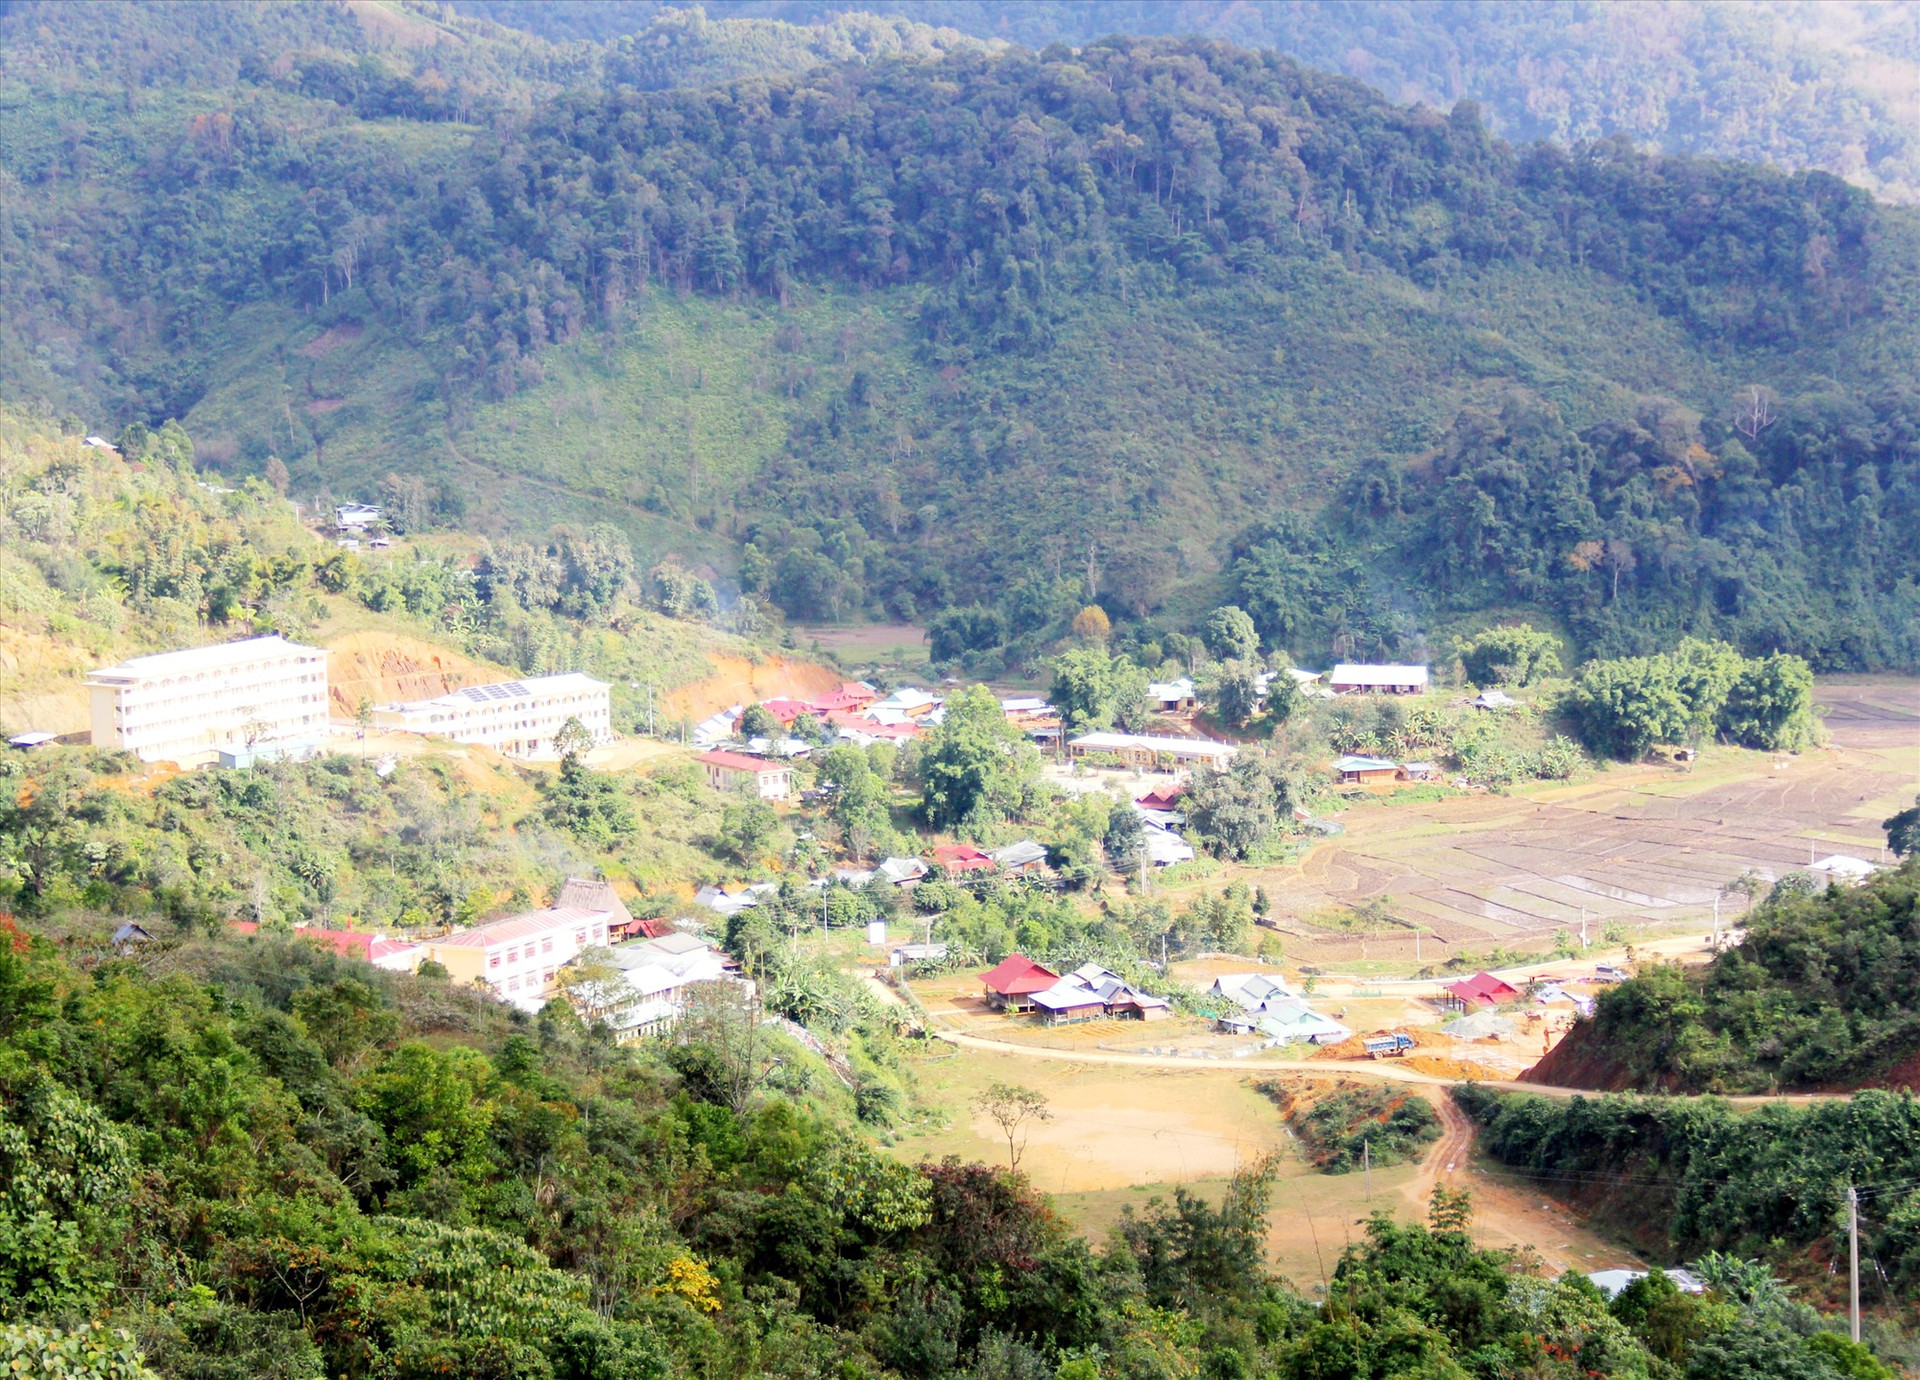 Từ các giải pháp đồng bộ được triển khai, diện mạo nông thôn miền núi huyện Tây Giang đã có nhiều khởi sắc. Ảnh: ALĂNG NGƯỚC